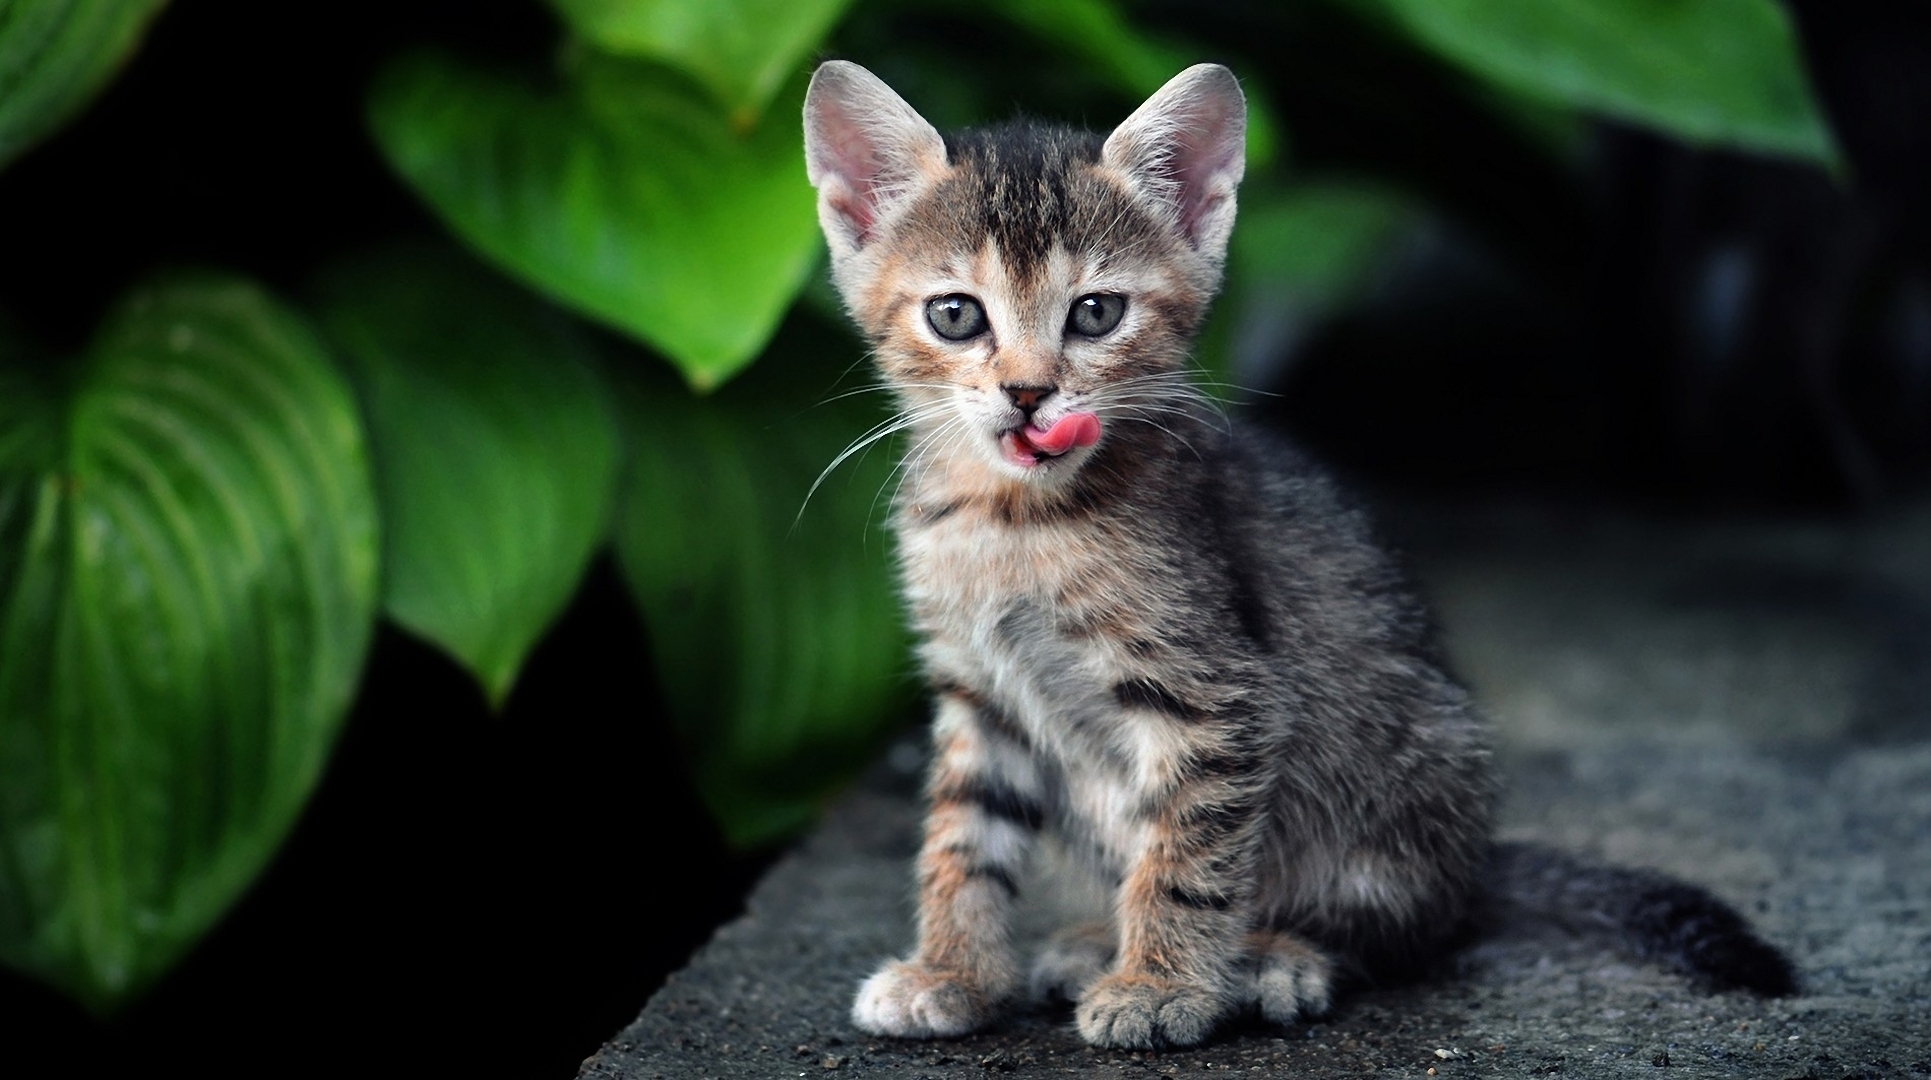 kitten, animals, grass, leaves, sit, kitty wallpaper for mobile